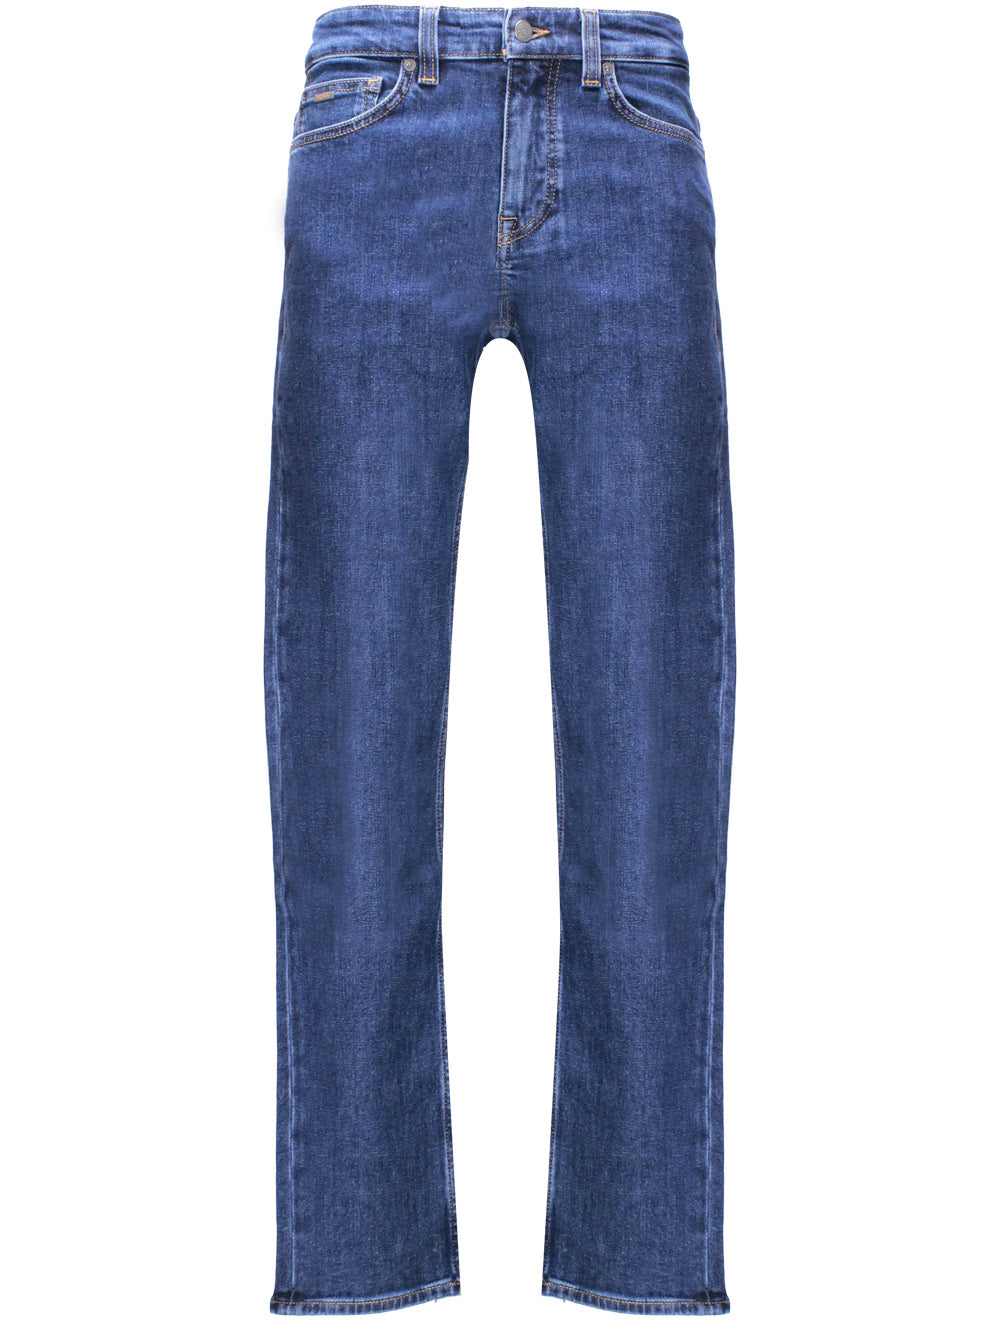 BOSS 50506700 Man Blue Jeans - Zuklat